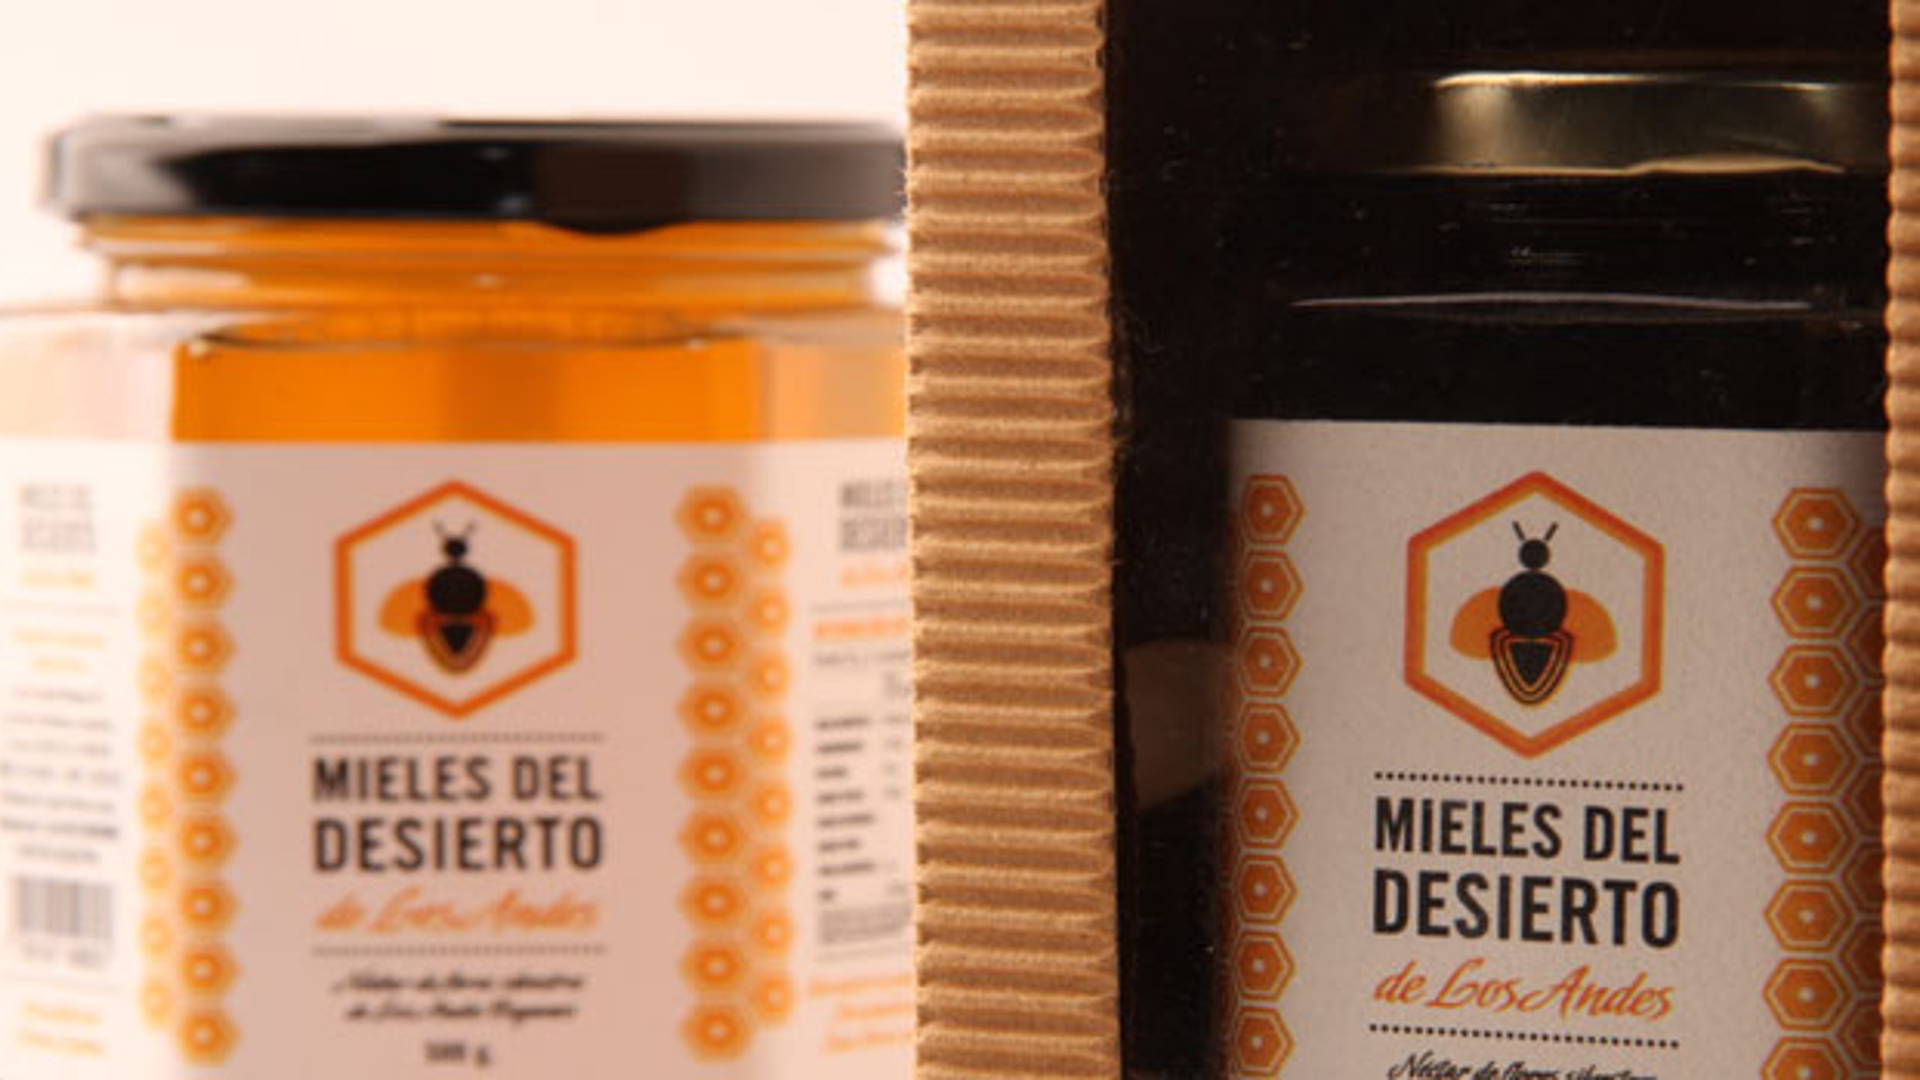 Featured image for Honey Concept: Mieles del Desierto de los Andes